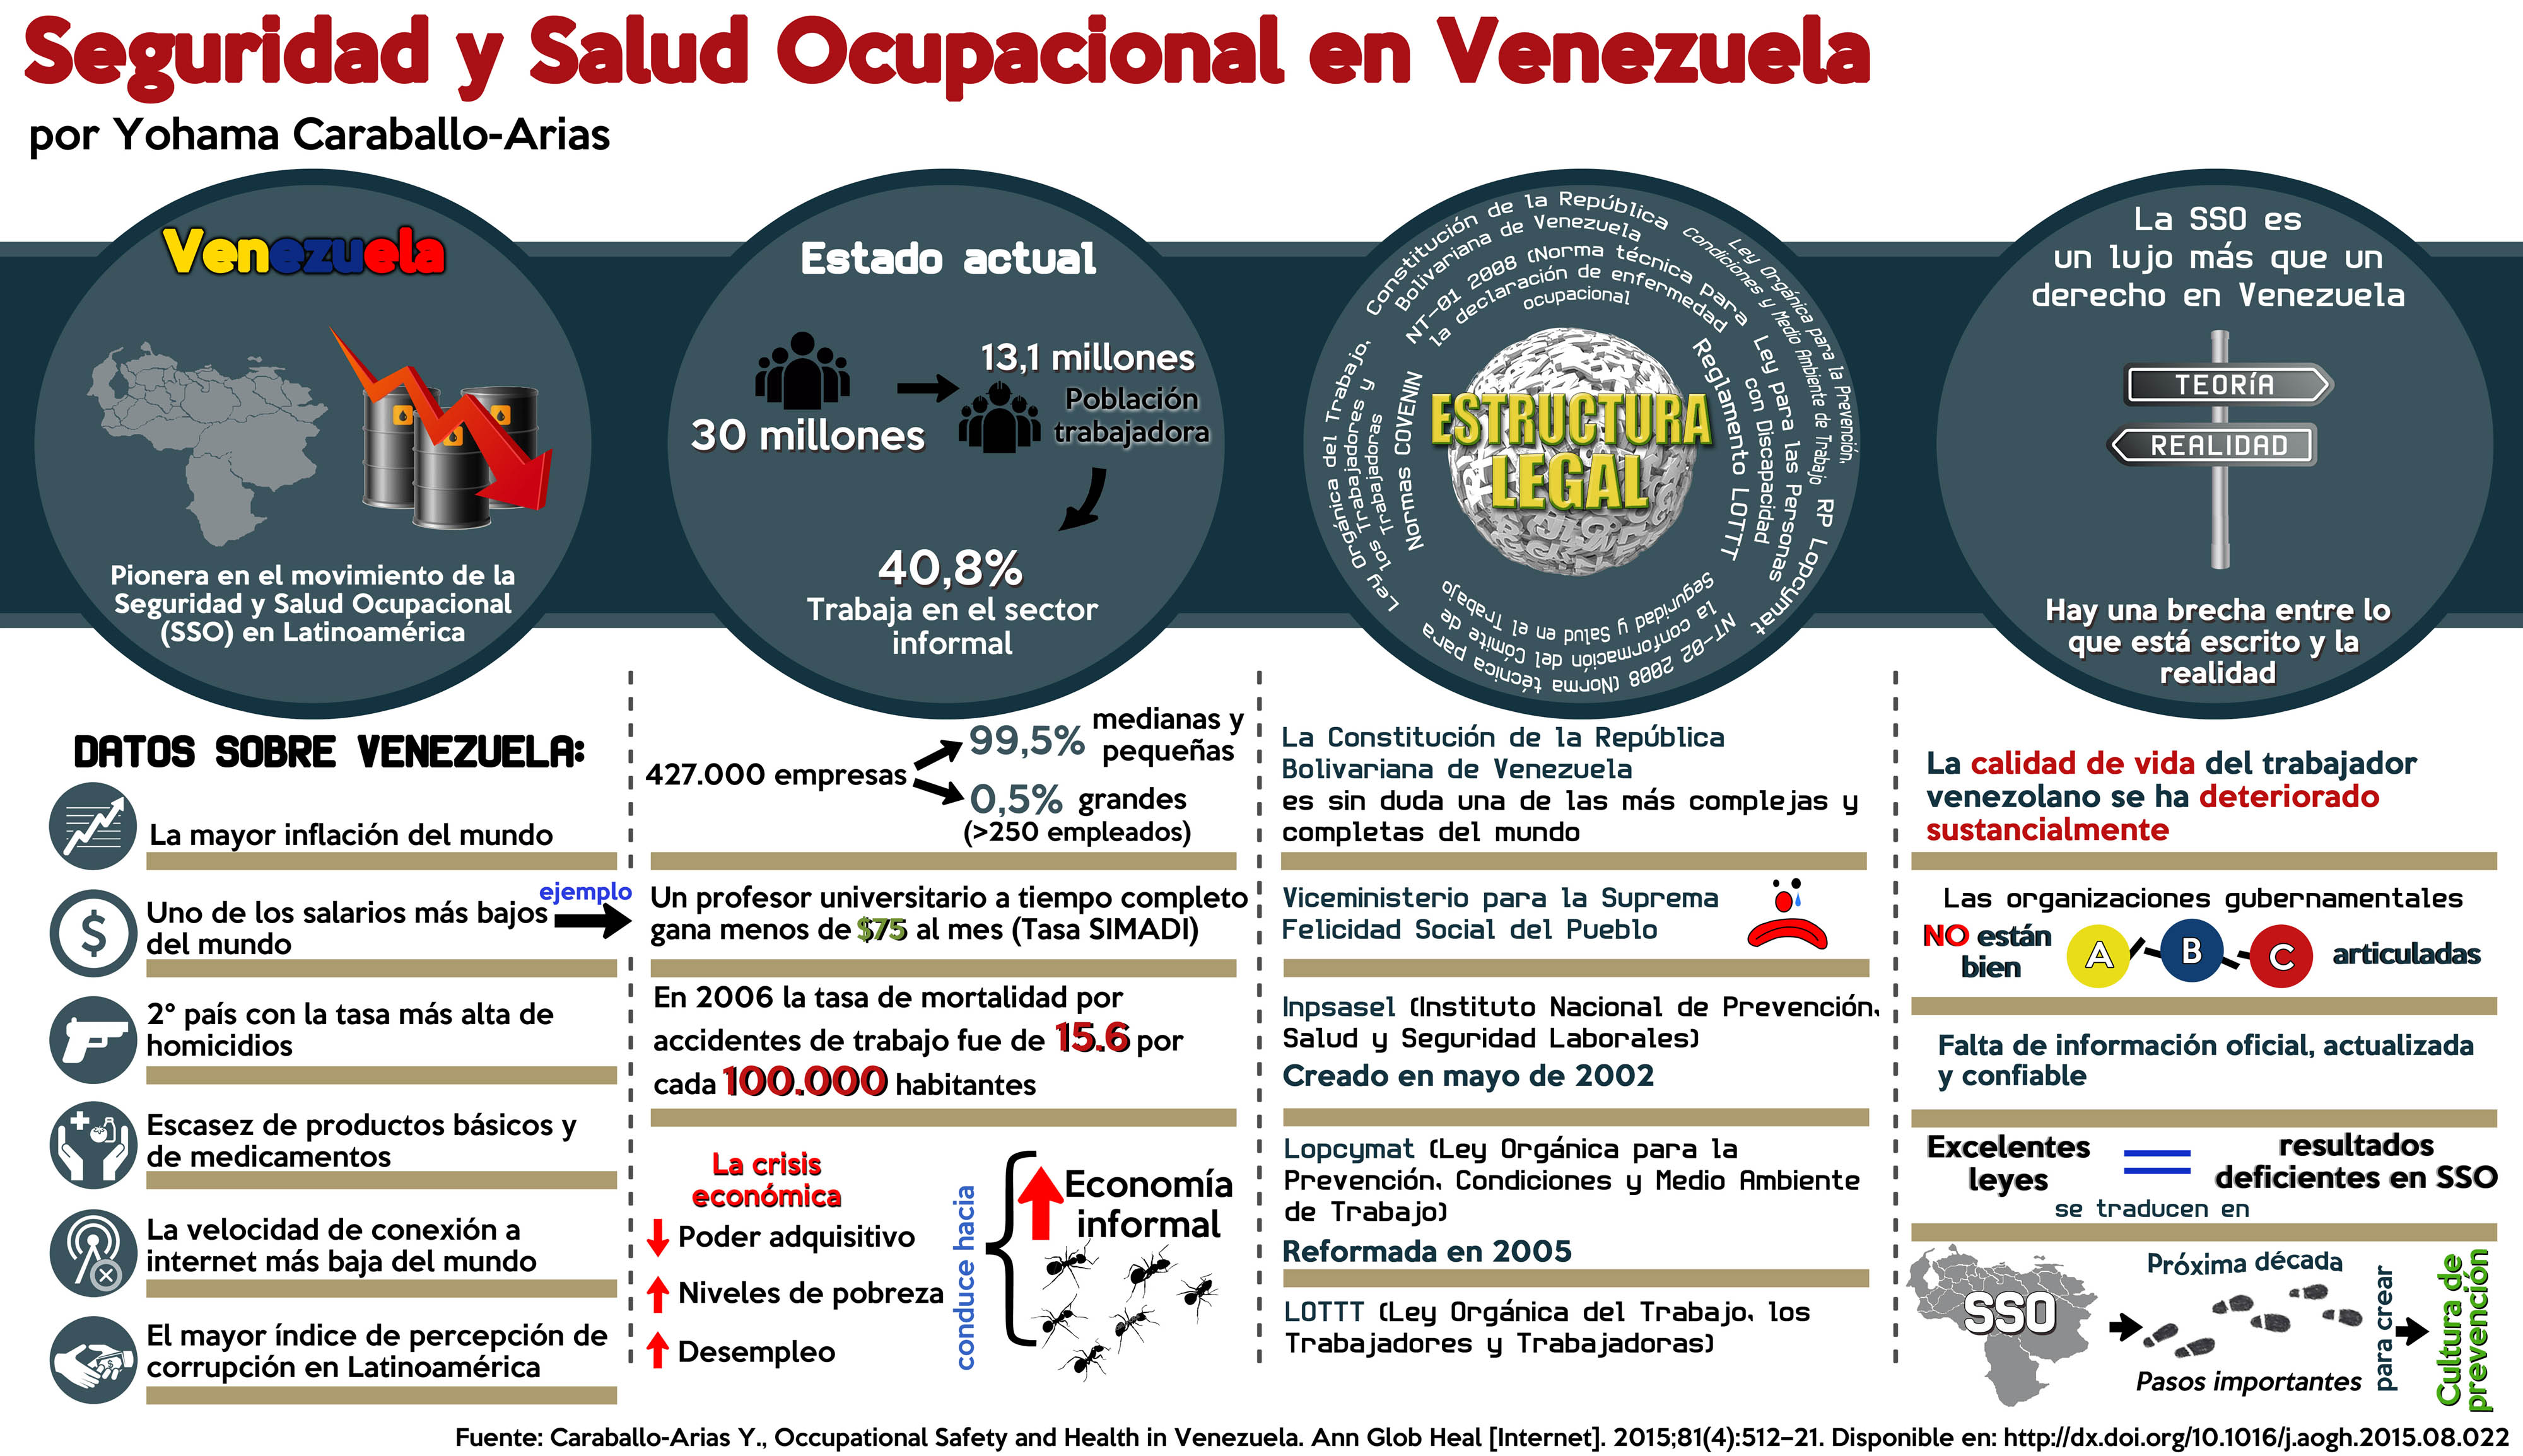 Infografía Seguridad y Salud Ocupacional en Venezuela